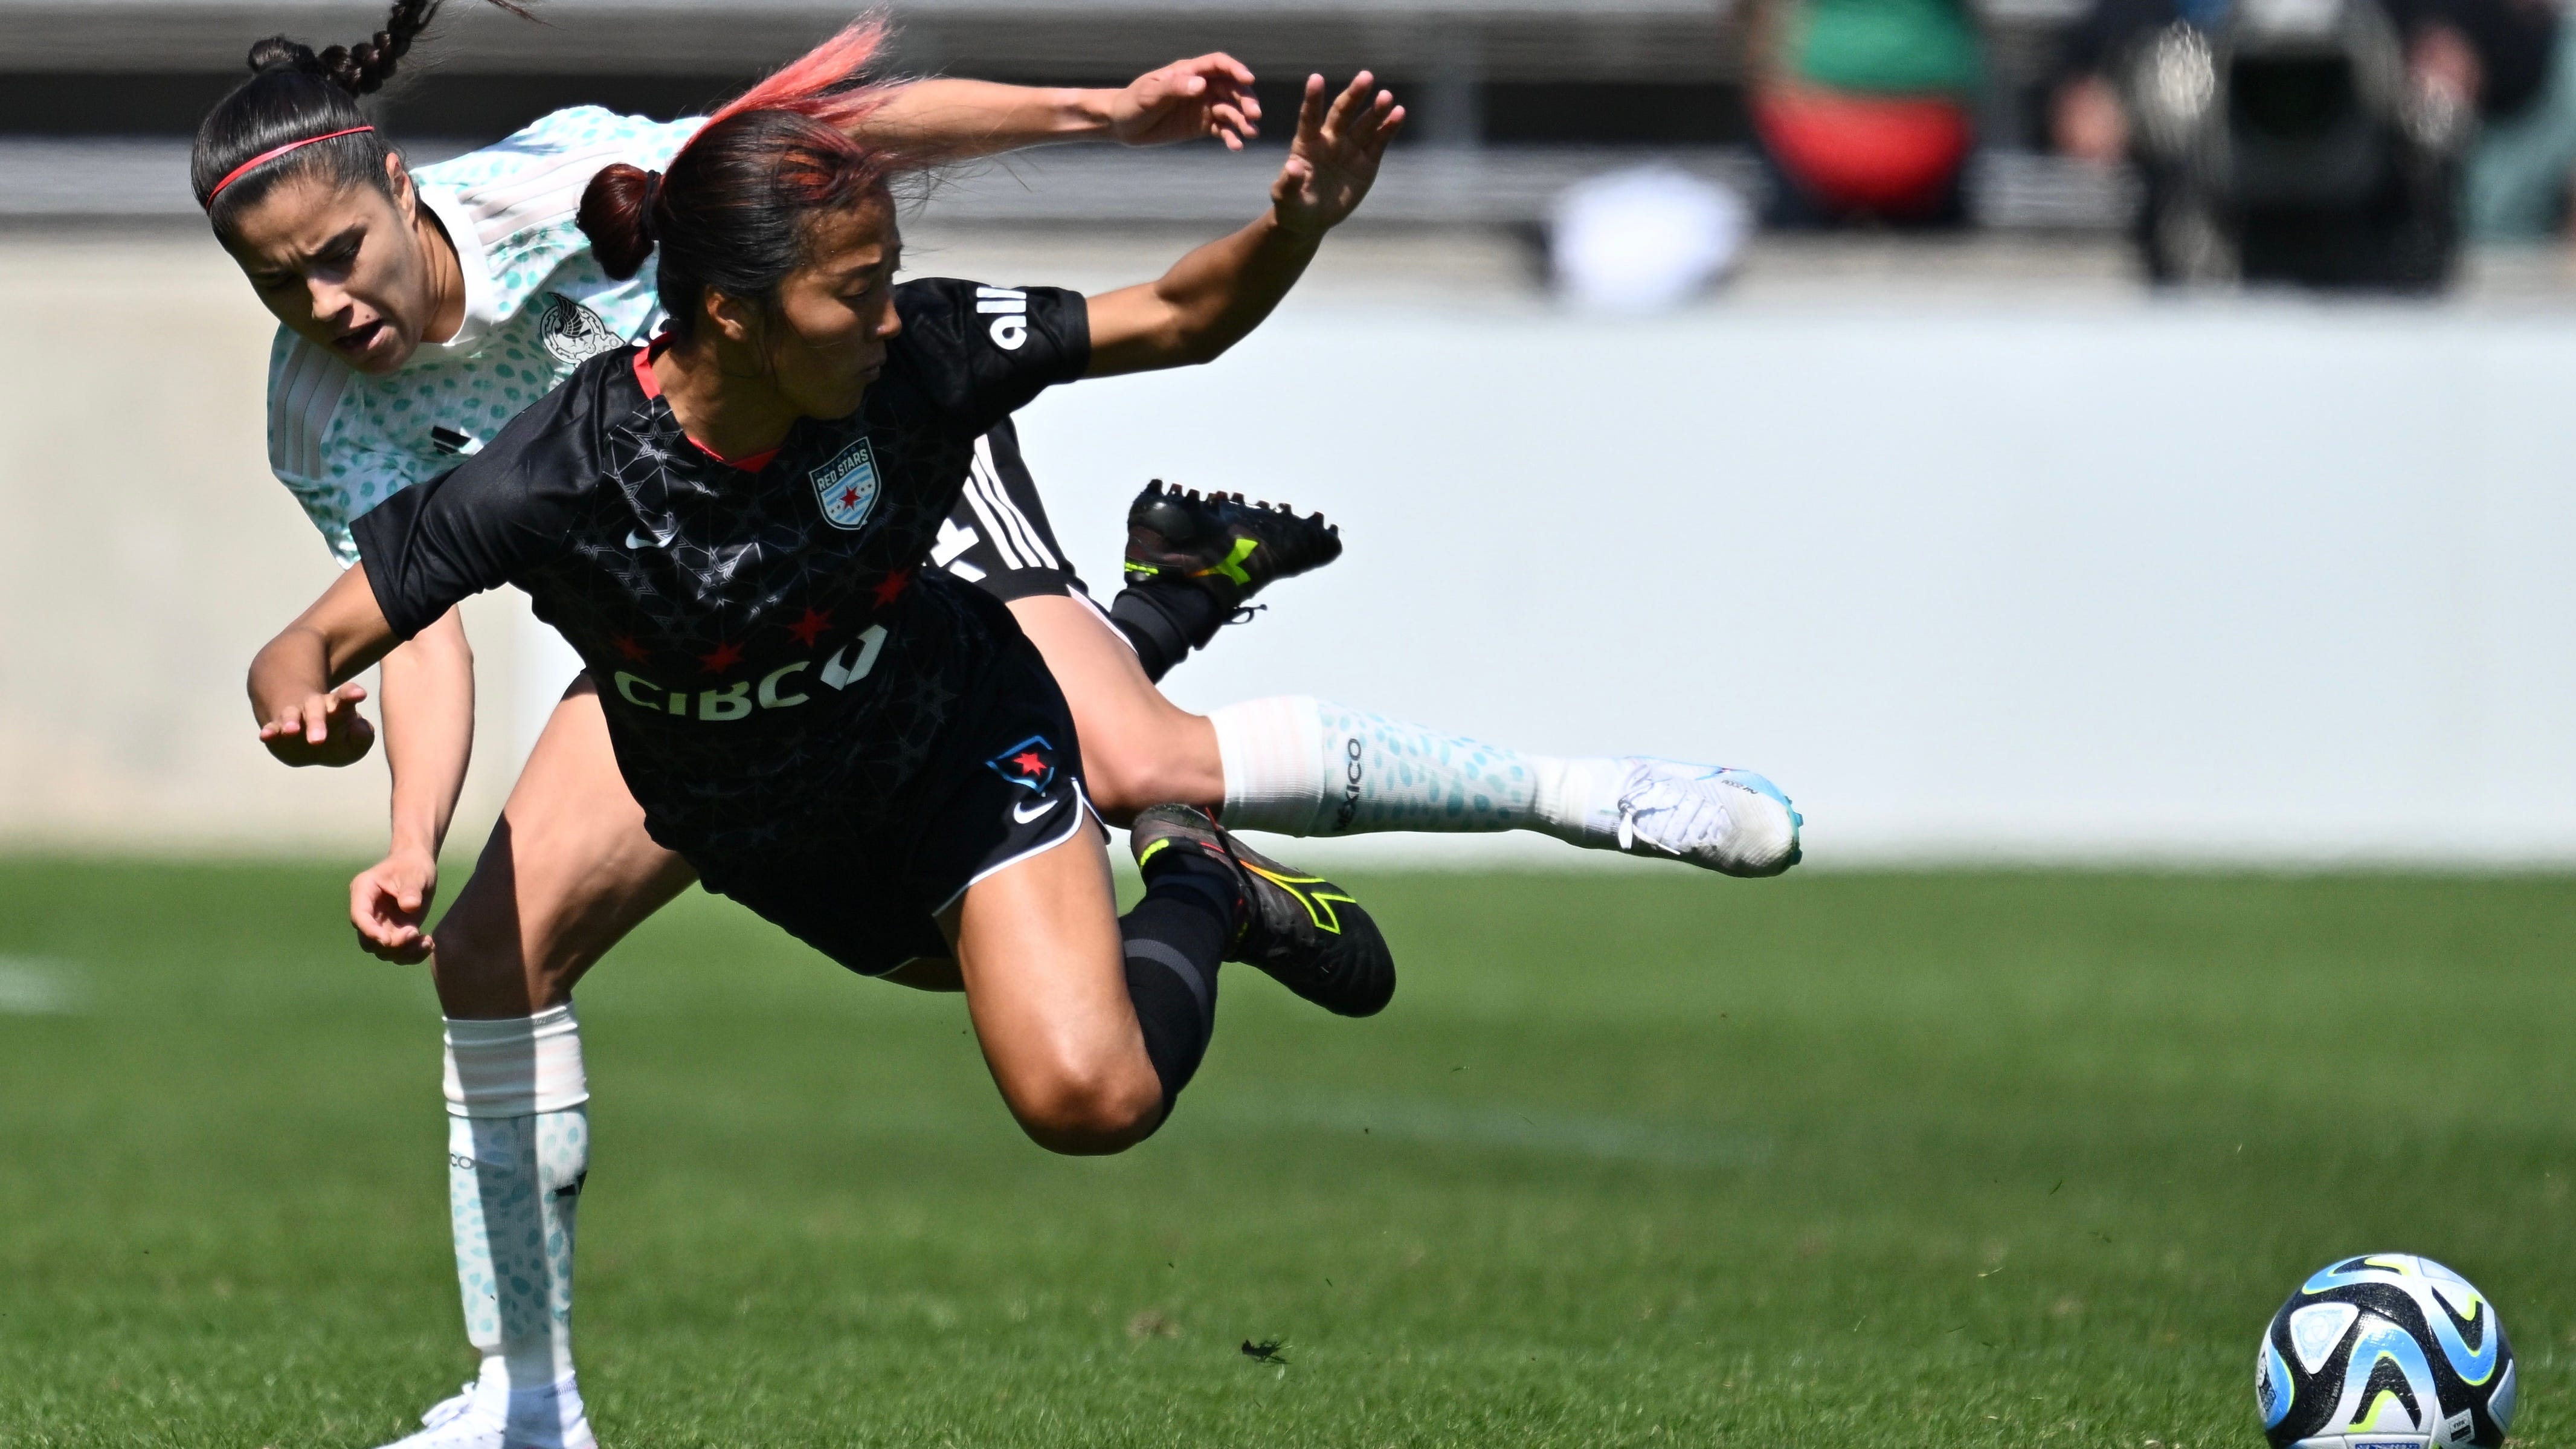 永里優季。進化し続ける海外女子サッカーの今と、日本への目線